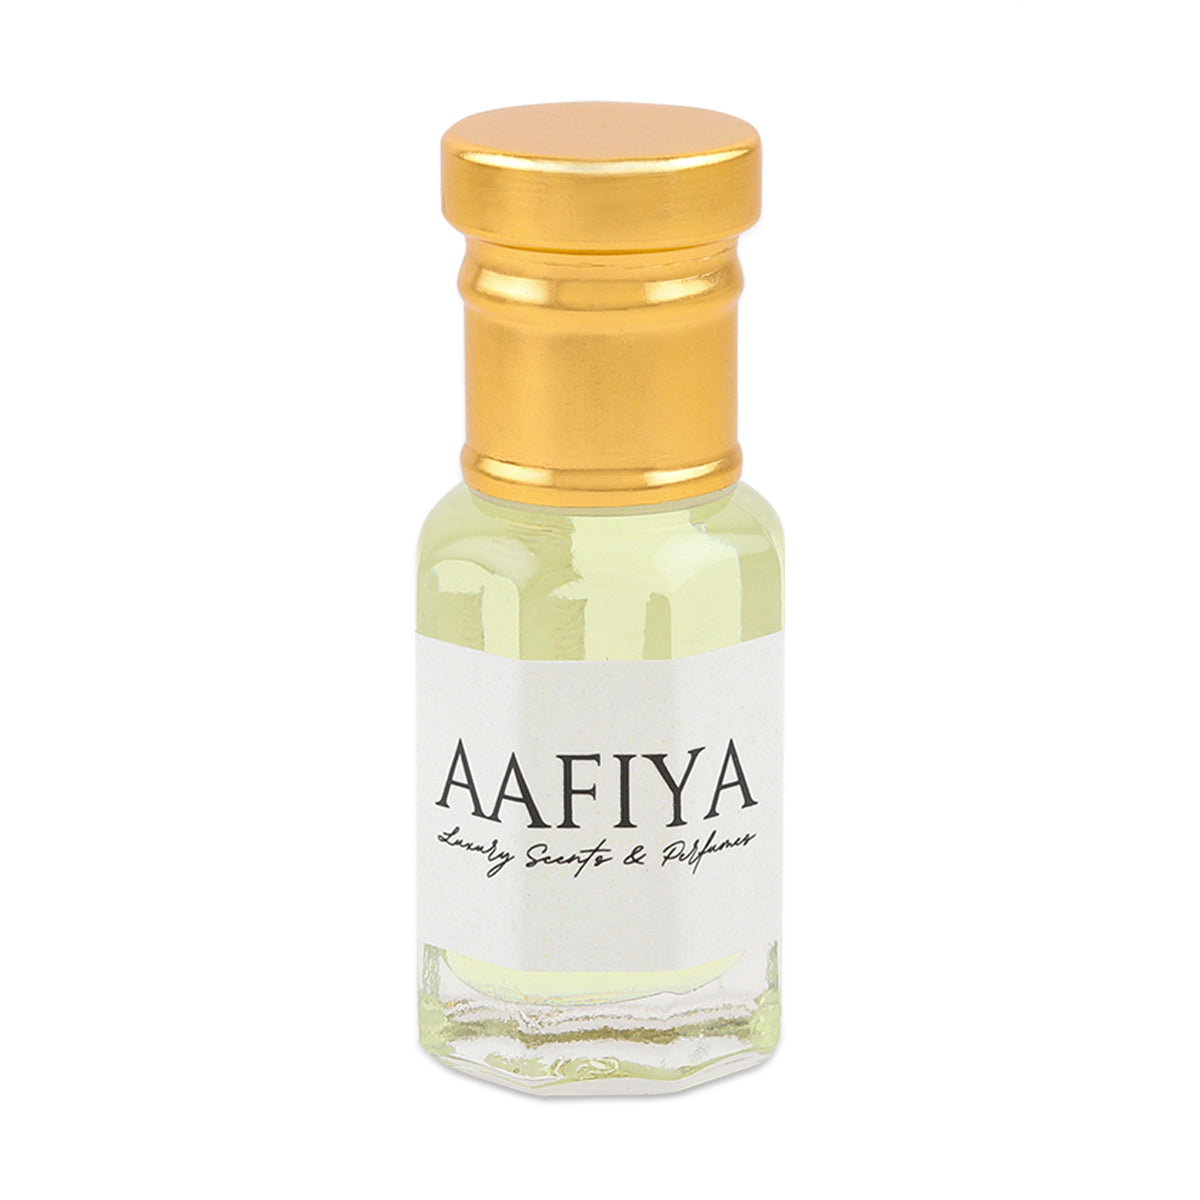 Sandal Rose Aafiya Luxury Scents & Perfumes